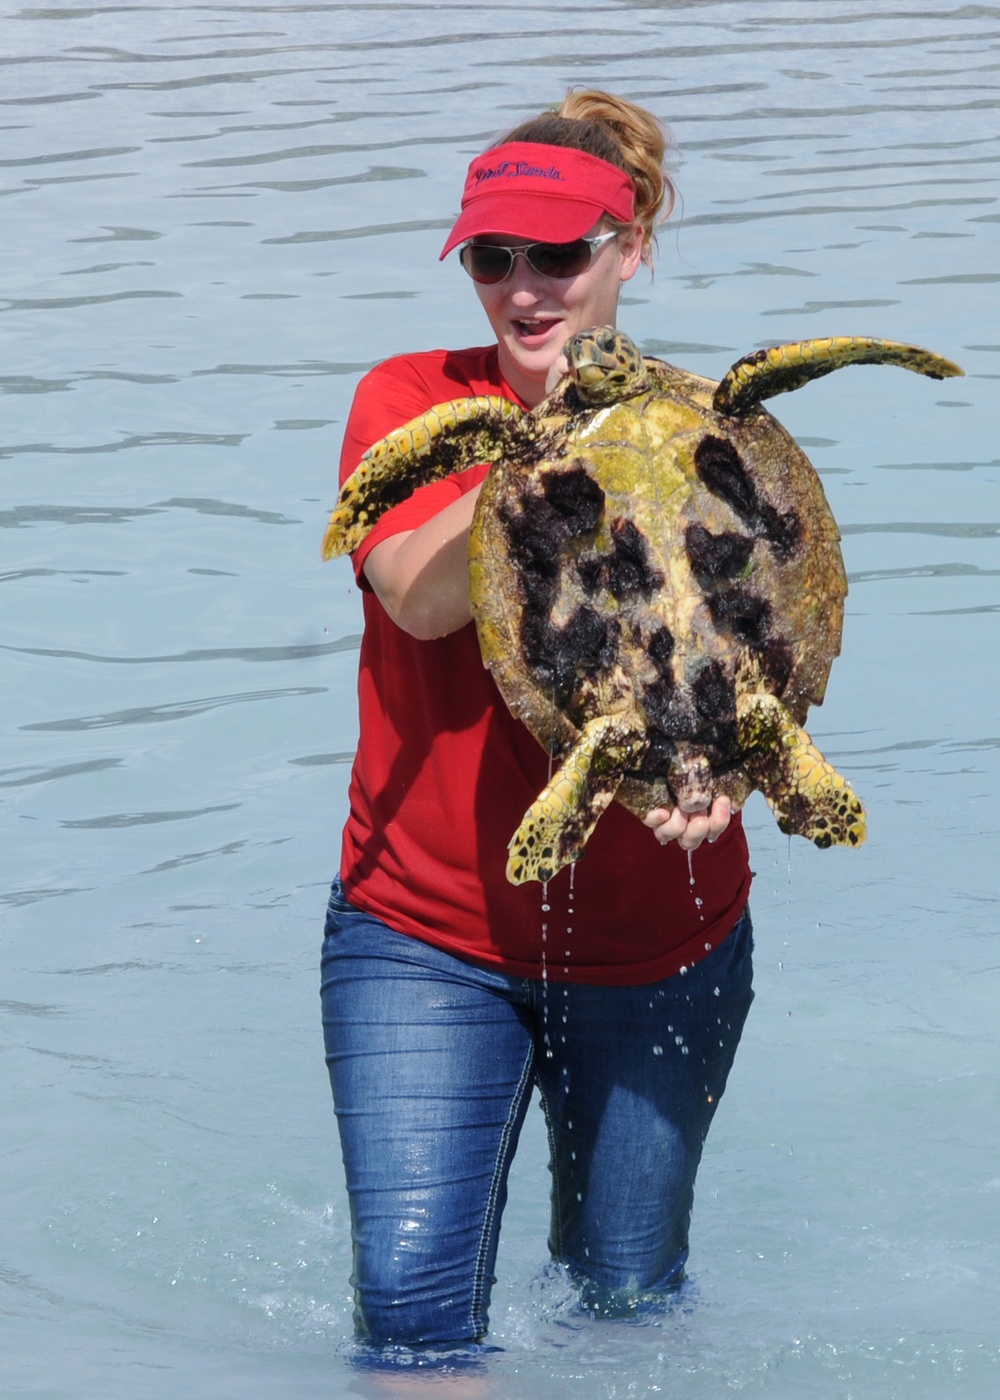 Scientists tag turtles at Diego Garcia